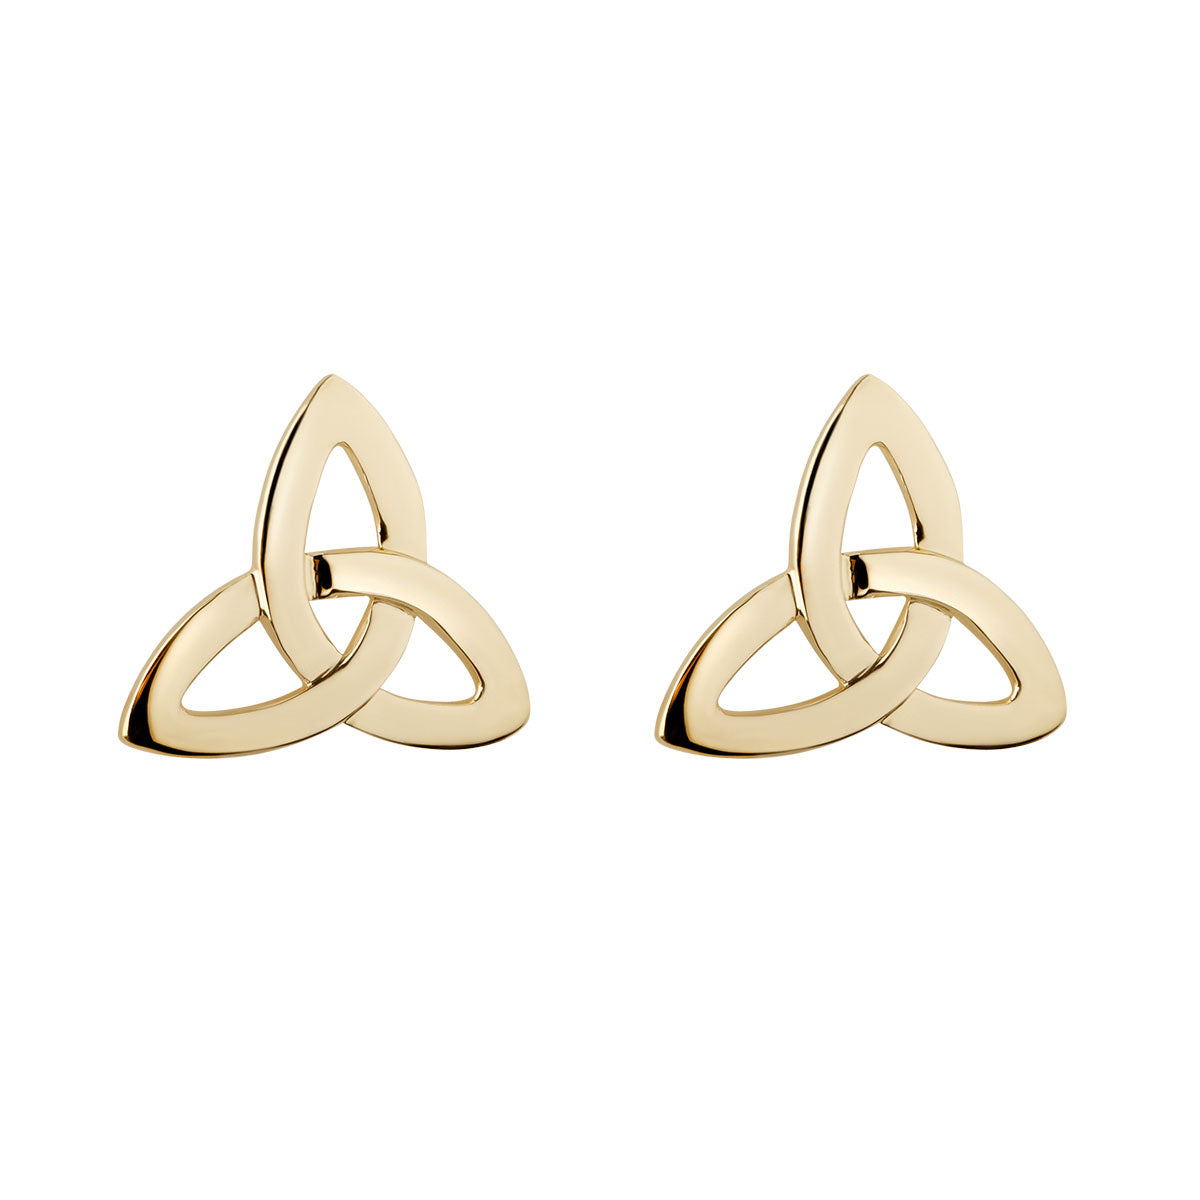 10k gold trinity knot stud earrings s3774 from Solvar